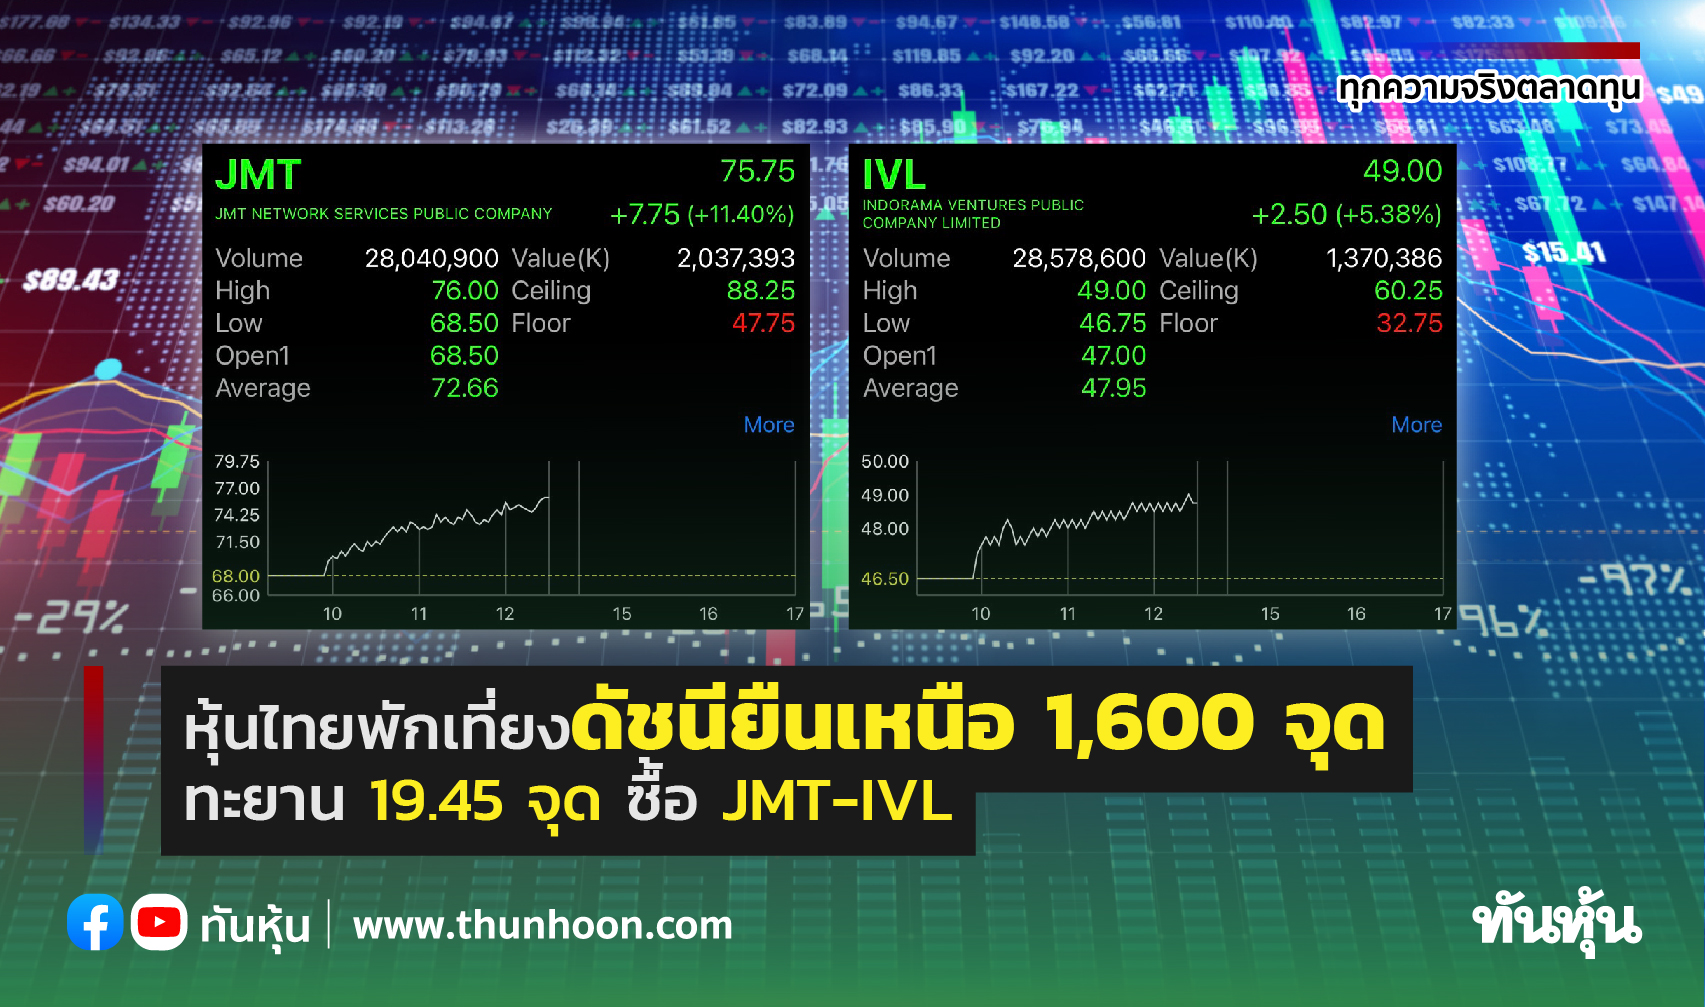 หุ้นไทยพักเที่ยงดัชนียืนเหนือ 1,600 จุด ทะยาน 19.45 จุด ซื้อ JMT-IVL